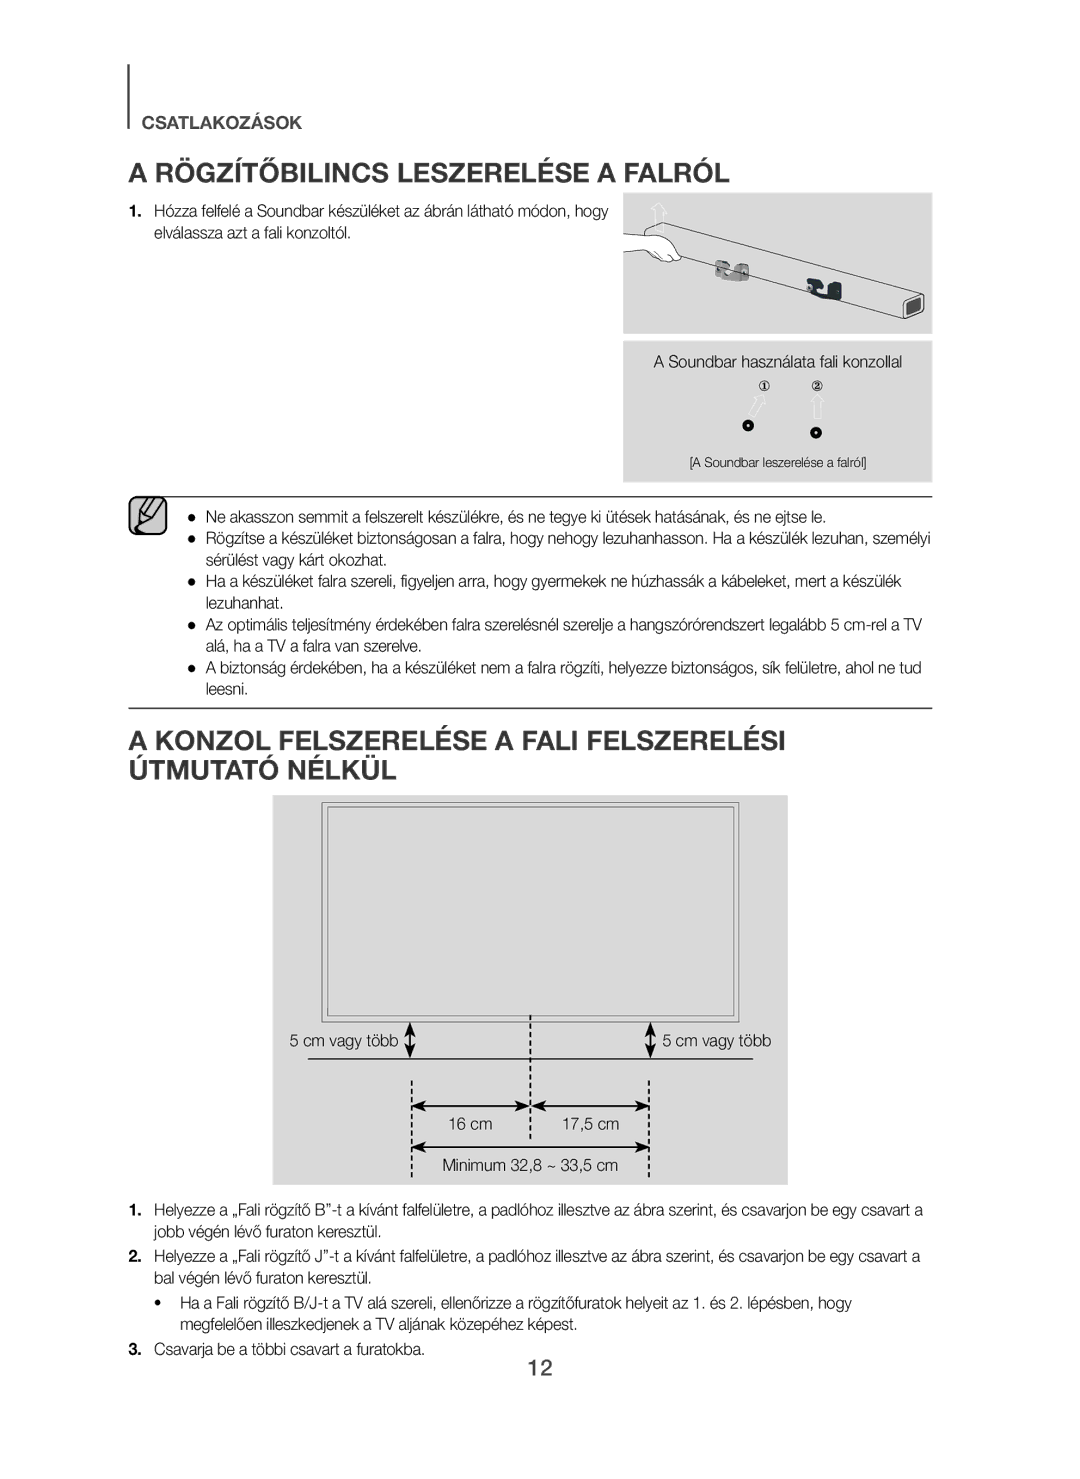 Samsung HW-H450/ZF manual Rögzítőbilincs Leszerelése a Falról, Konzol Felszerelése a Fali Felszerelési Útmutató Nélkül 